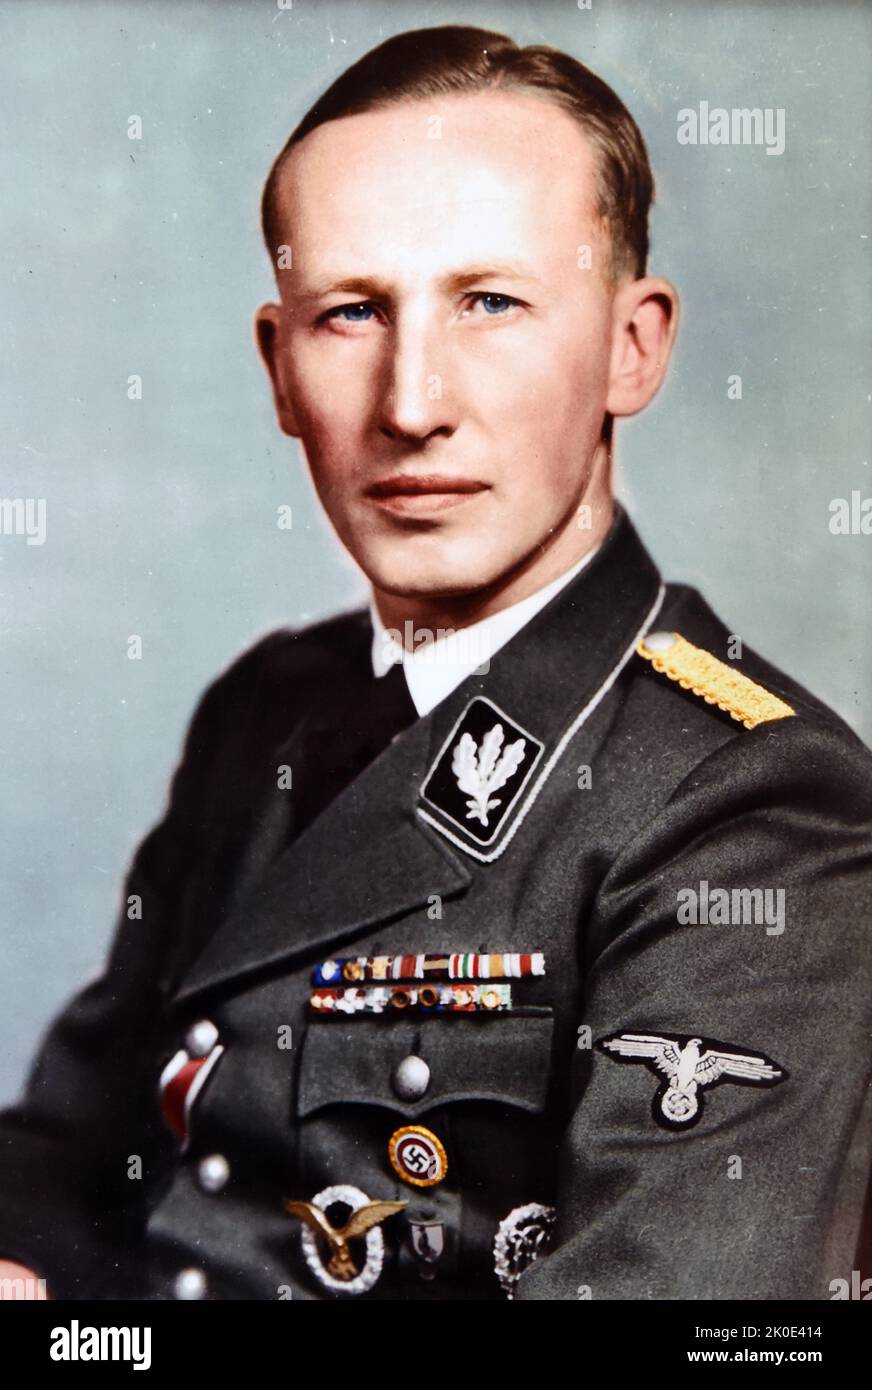 Reinhard Heydrich (1904 - 1942) ufficiale tedesco di alto rango delle SS e della polizia durante l'era nazista e architetto principale dell'Olocausto. Era capo della sede centrale della sicurezza del Reich. Ha presieduto la Conferenza di Wannsee del gennaio 1942, che formalizzava i piani per la "soluzione finale alla questione ebraica", la deportazione e il genocidio di tutti gli ebrei nell'Europa occupata dalla Germania. Foto Stock